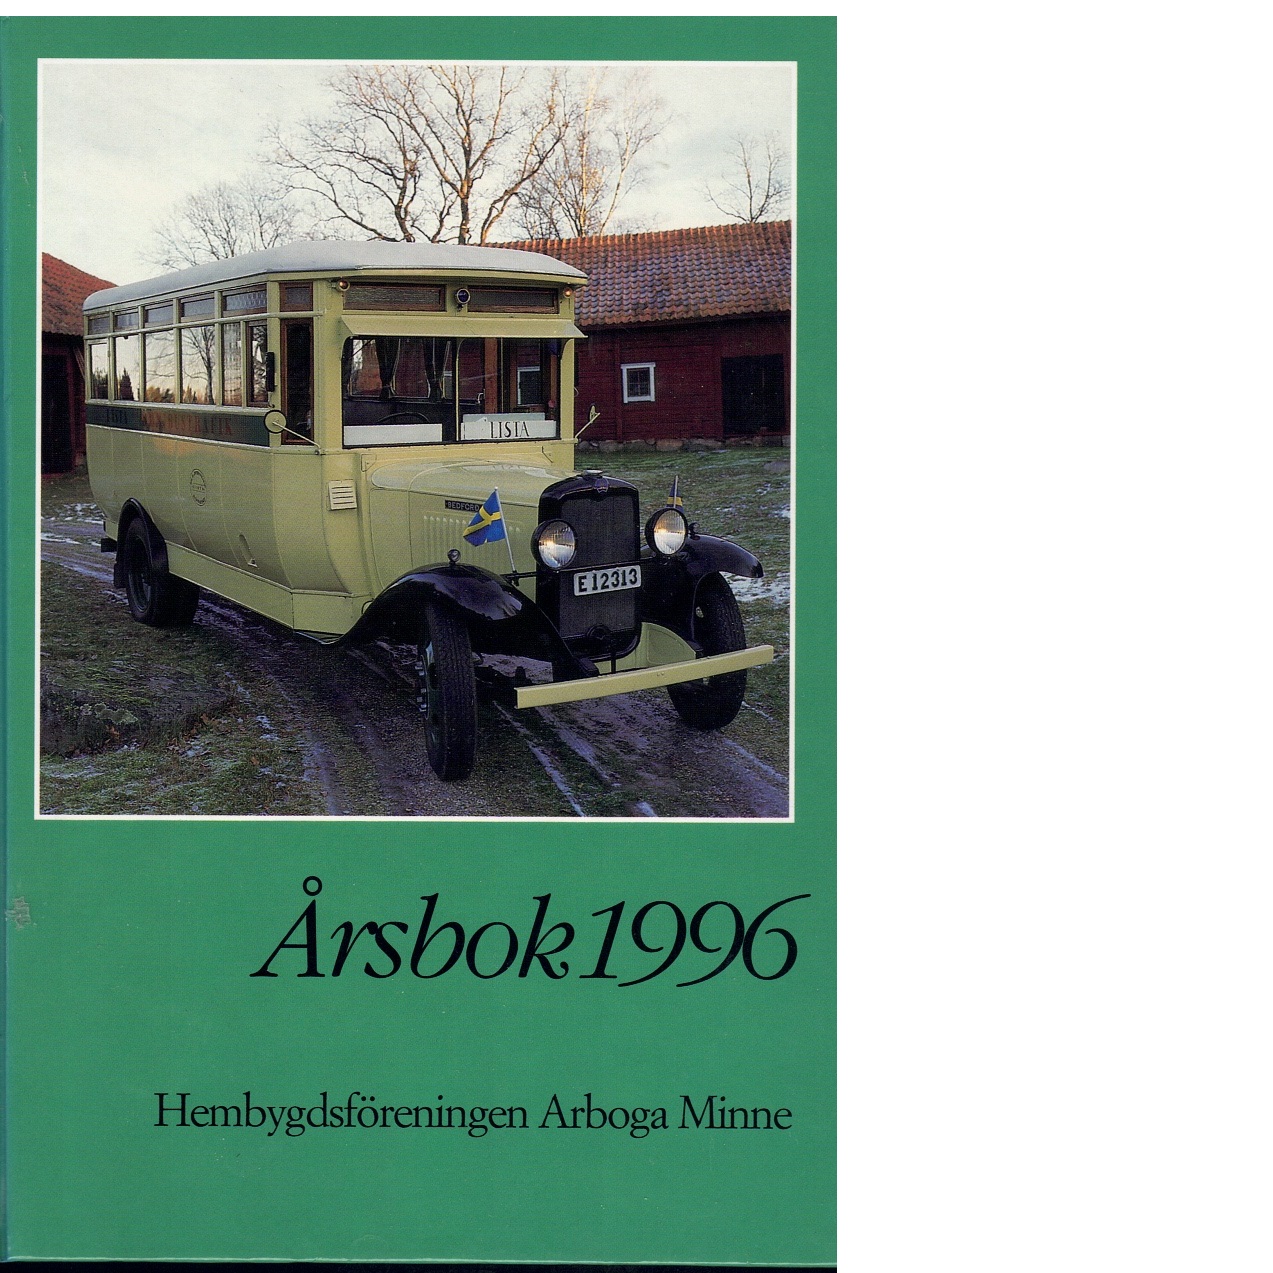 Årsbok / Hembygdsföreningen Arboga minne. 1996 - Red.